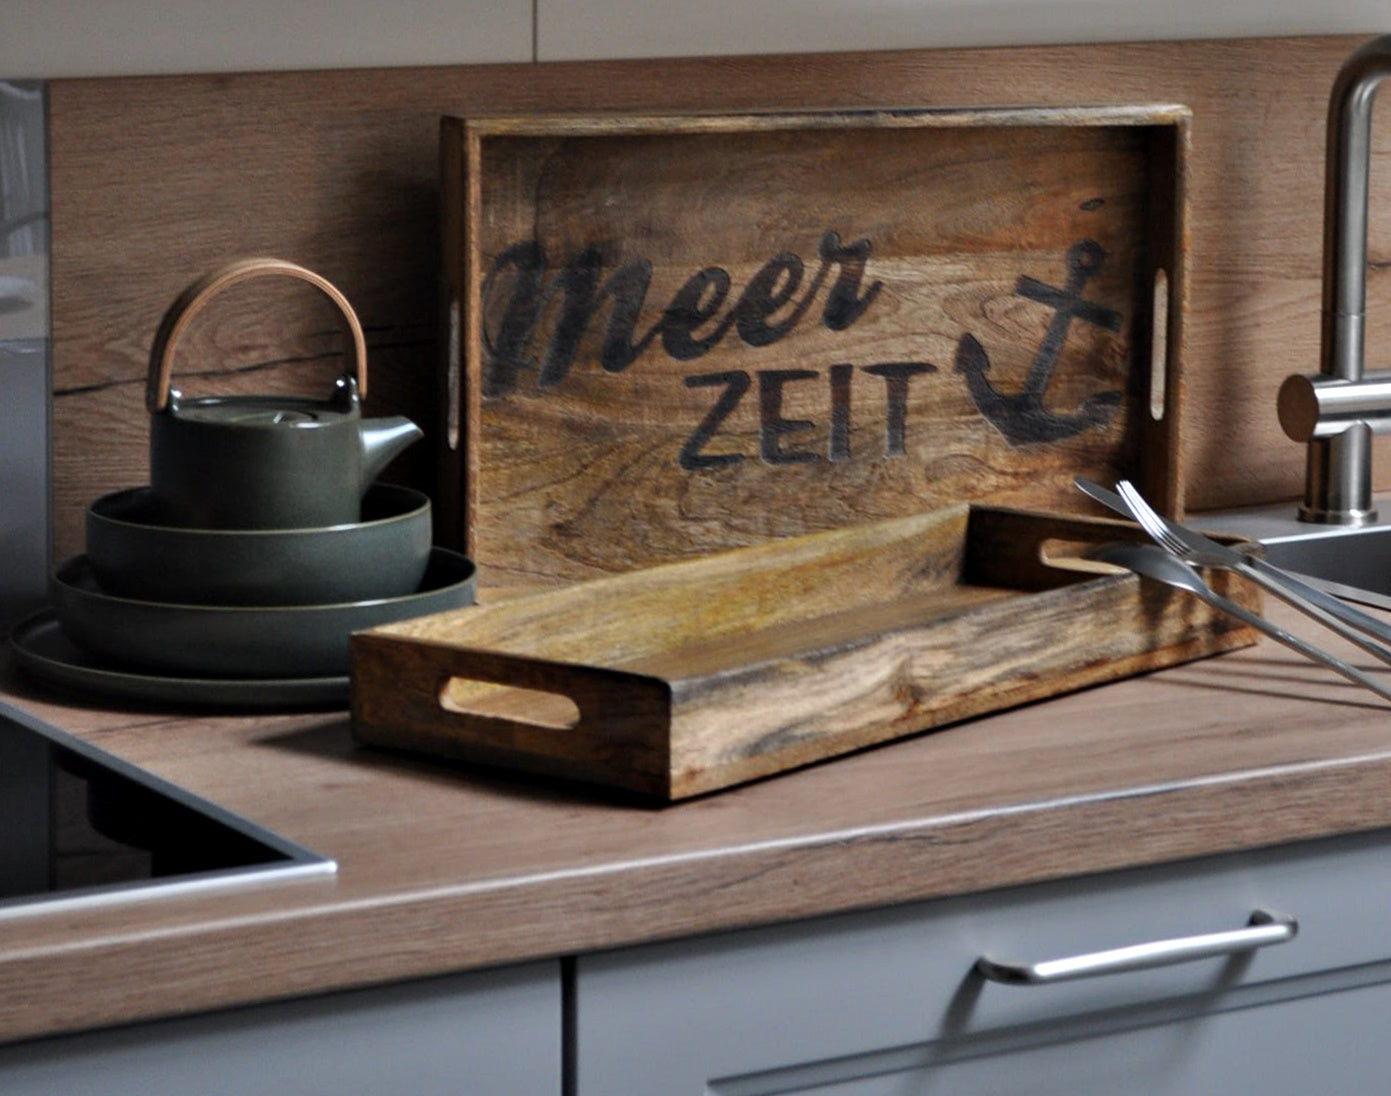 Küchen-Tablett / Serviertablett  aus Holz mit MEER ZEIT Branding 50x20 / 43x27,5 cm Schöne Deko